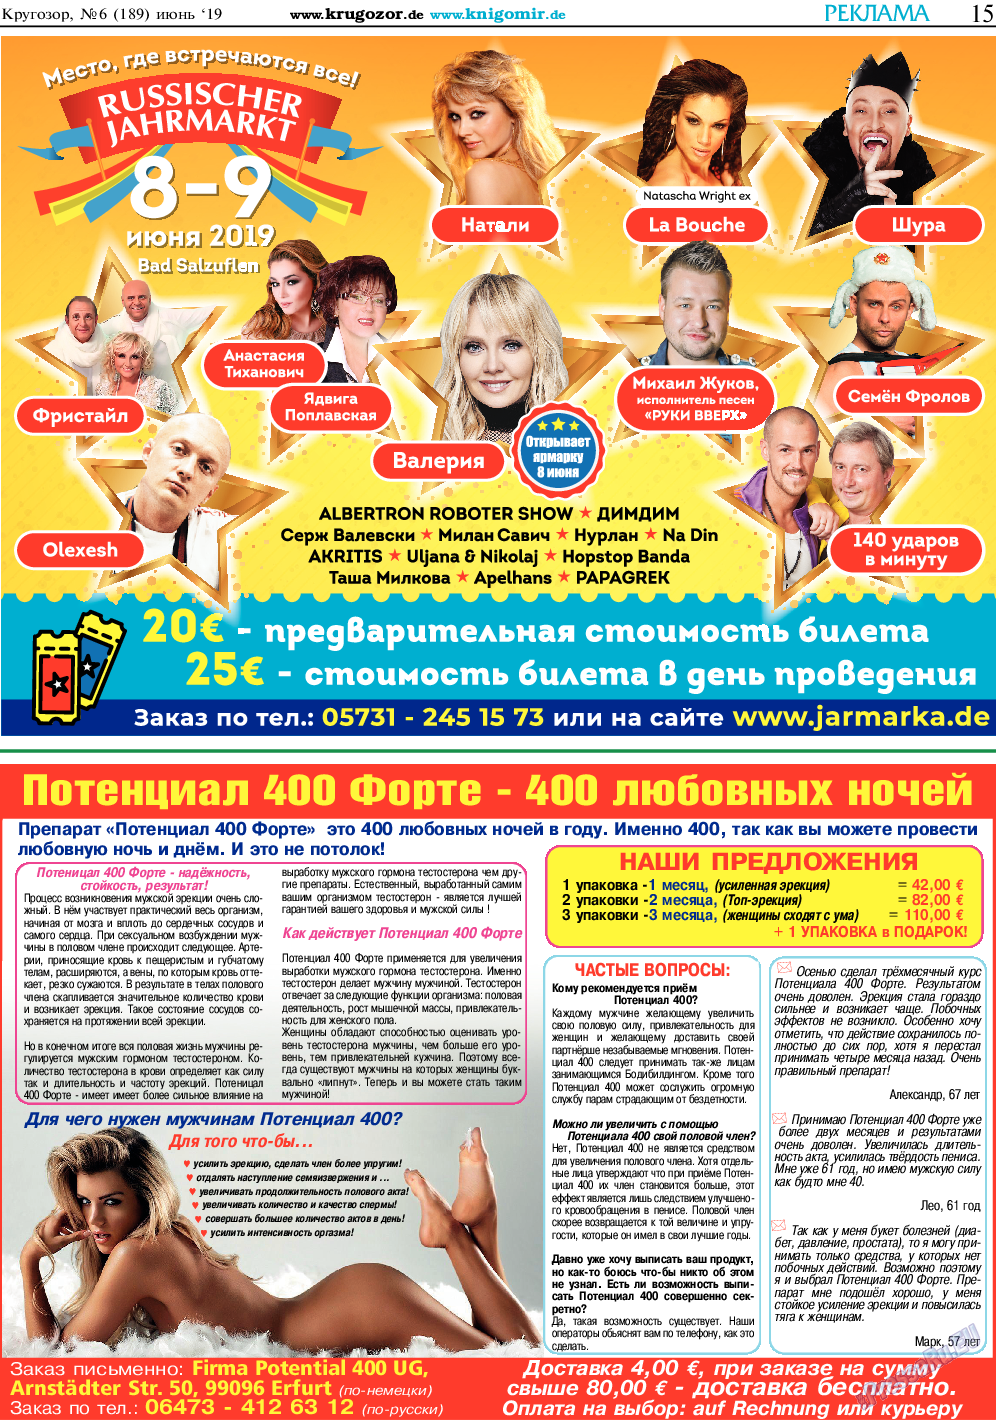 Кругозор, газета. 2019 №6 стр.15